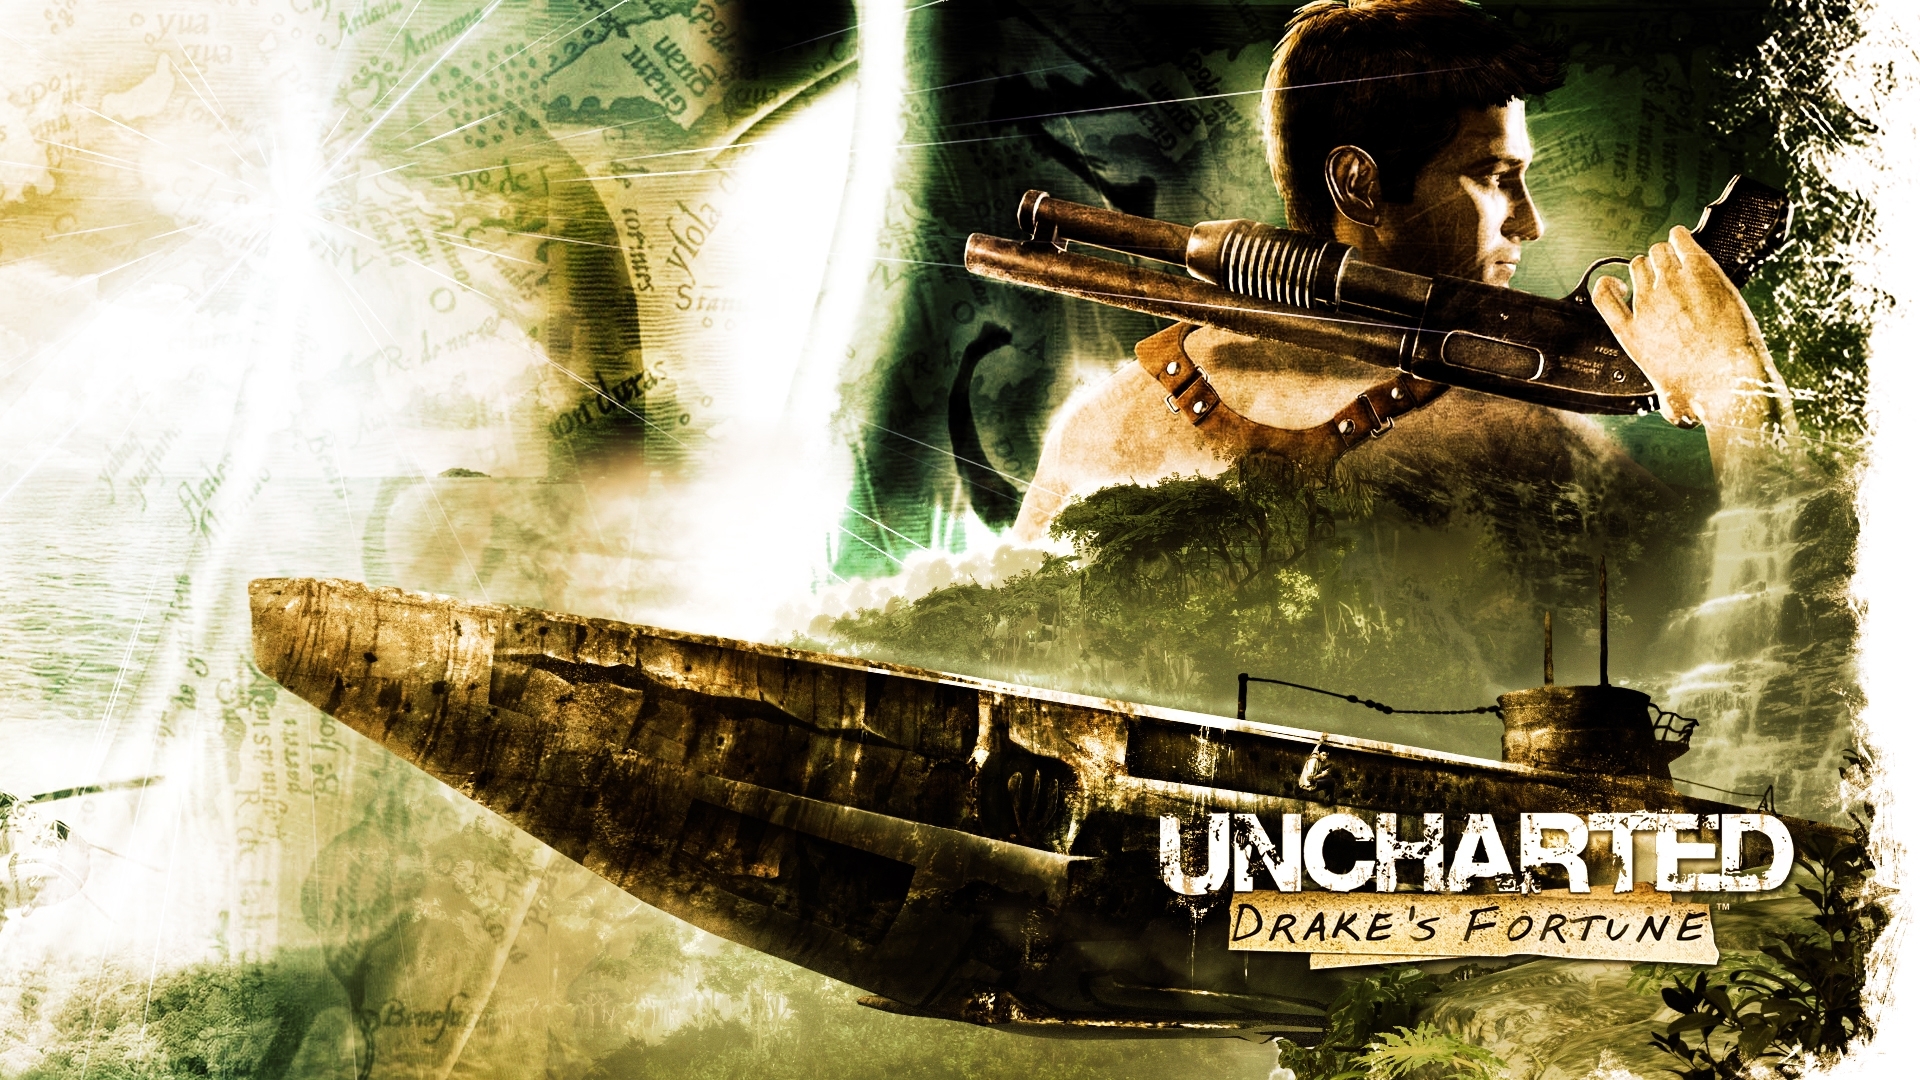 Популярные заставки и фоны Uncharted на компьютер